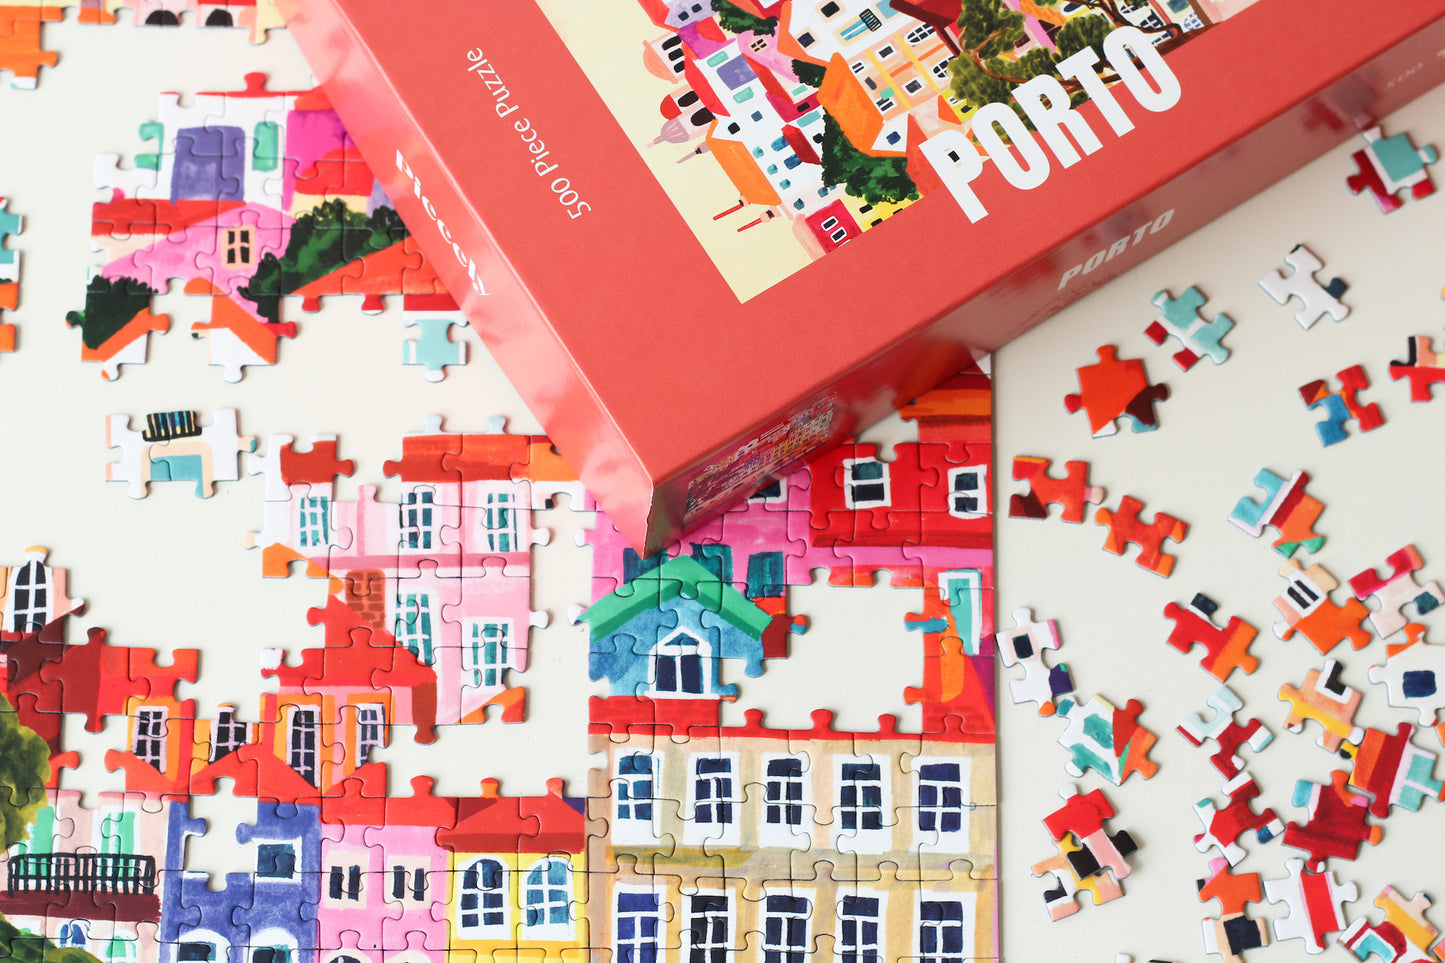 Nachhaltiges Puzzle mit 500 Teilen, das die portugiesische Stadt Porto mit ihren bunten Häusern zeigt.